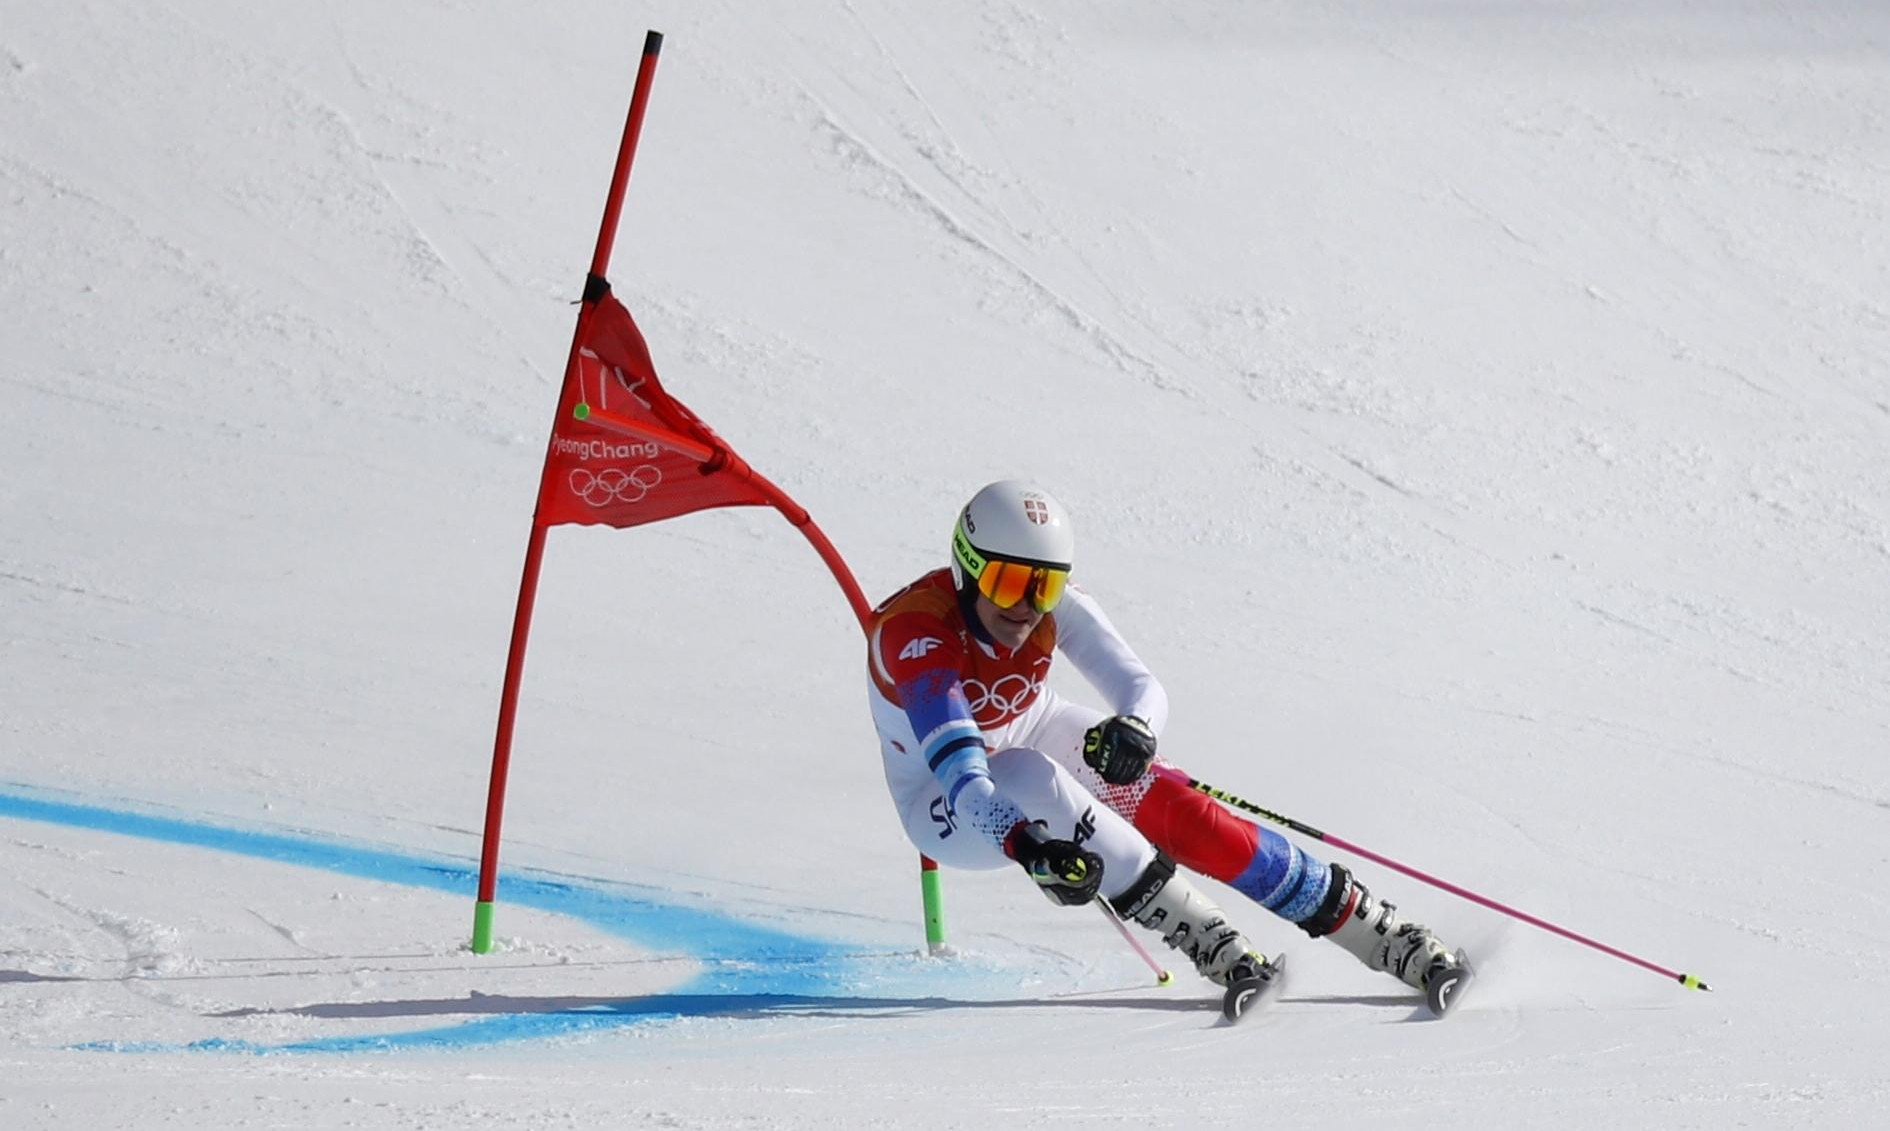 NEVENA NAJBOLJA U KARIJERI! Srpska skijašica postavila lični rekord na velikim takmičenjima